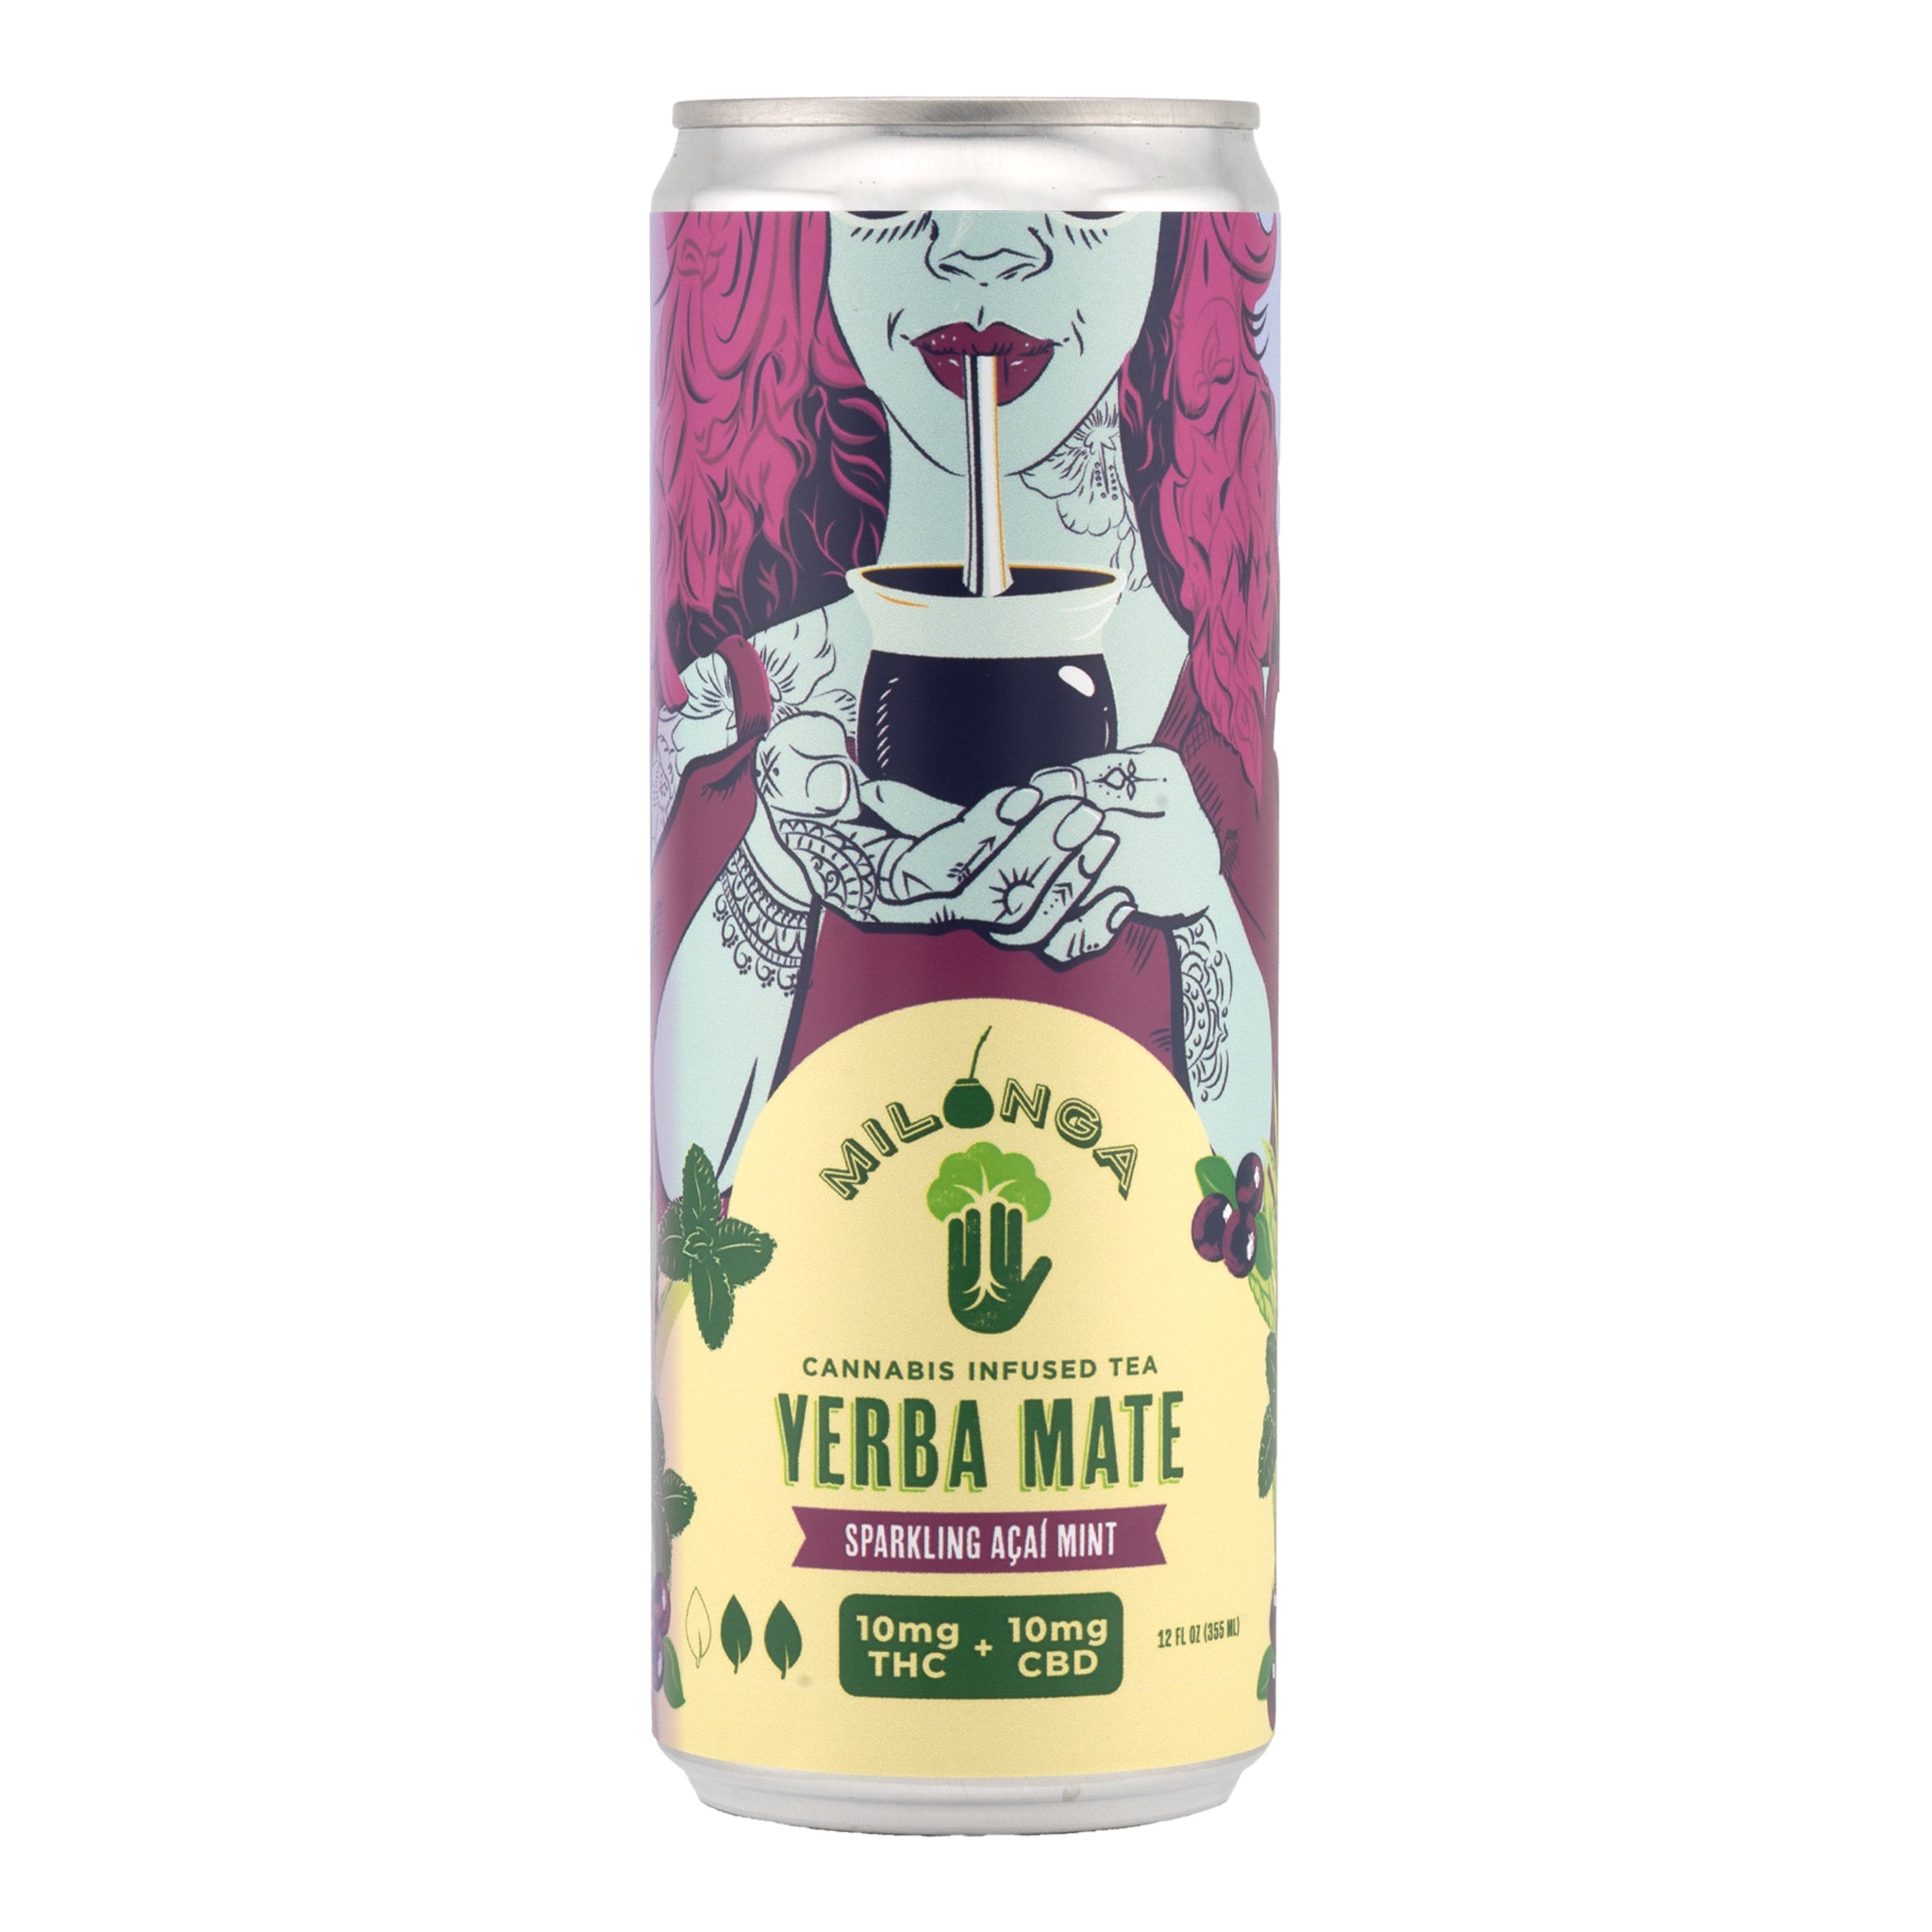 MILONGA Cannabis Infused Yerba Mate Tea